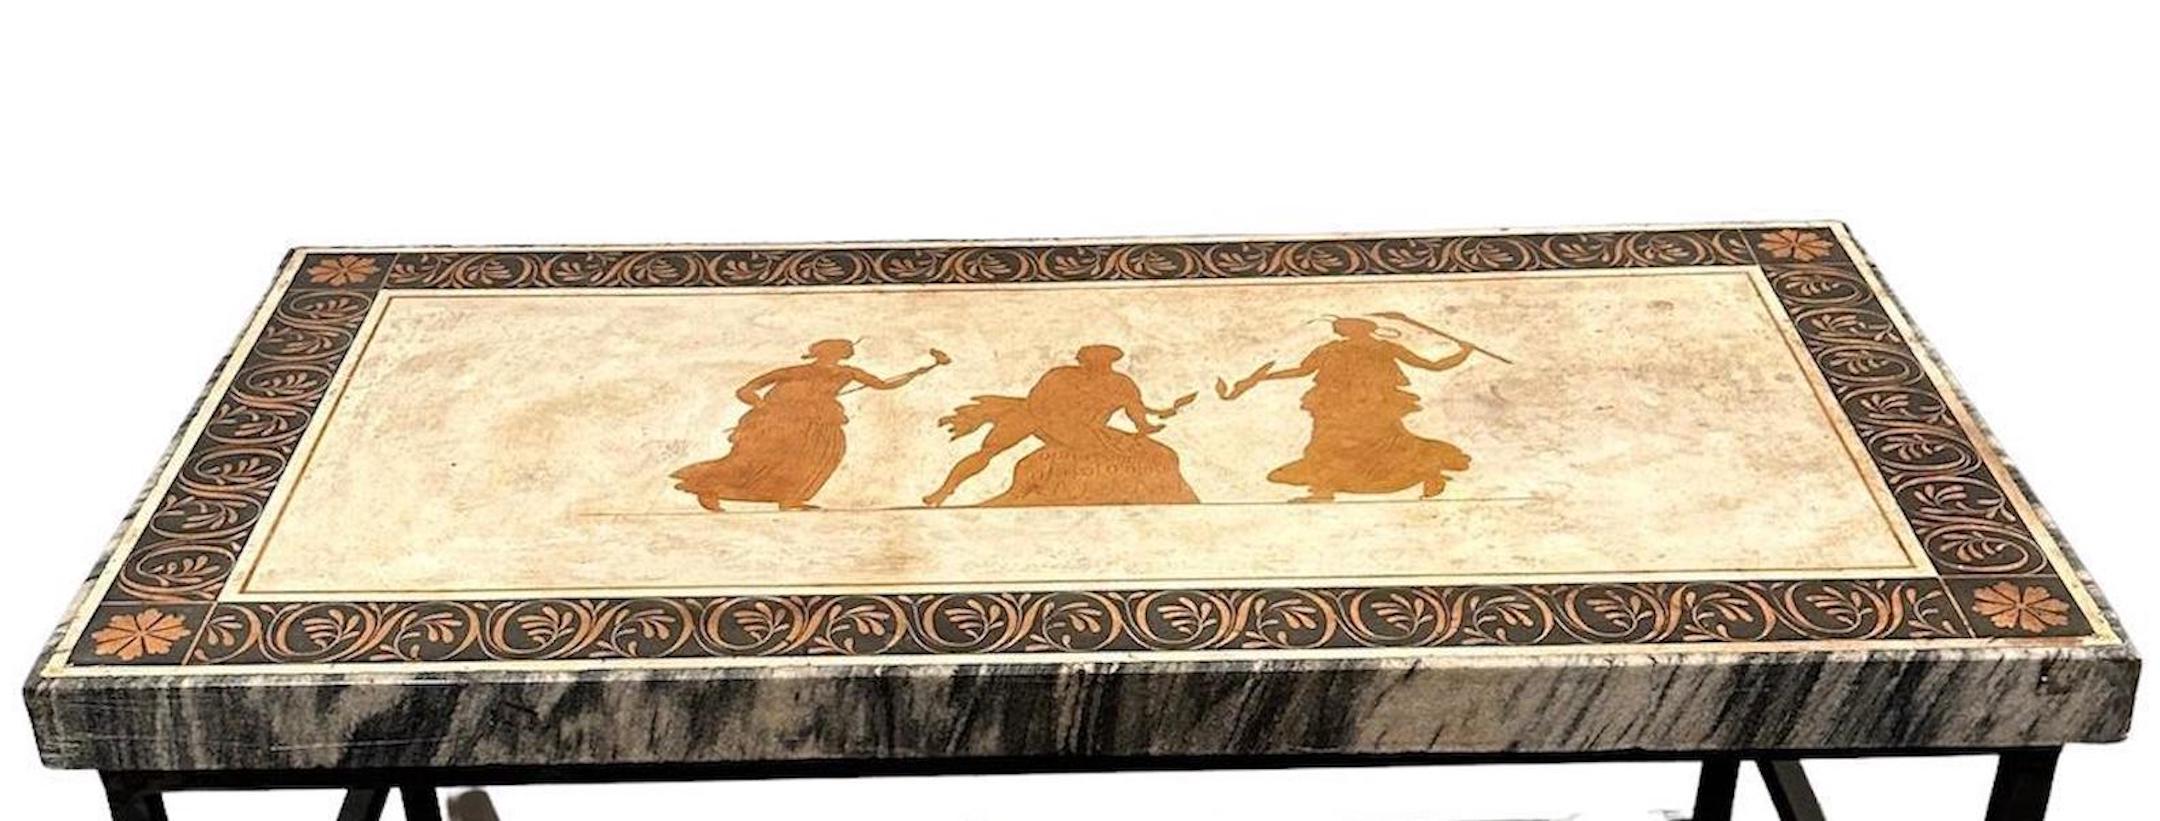 Ancien plateau de table en scagliola incrusté de marbre, représentant des personnages de la mythologie grecque, sur une base en fer d'une date ultérieure.